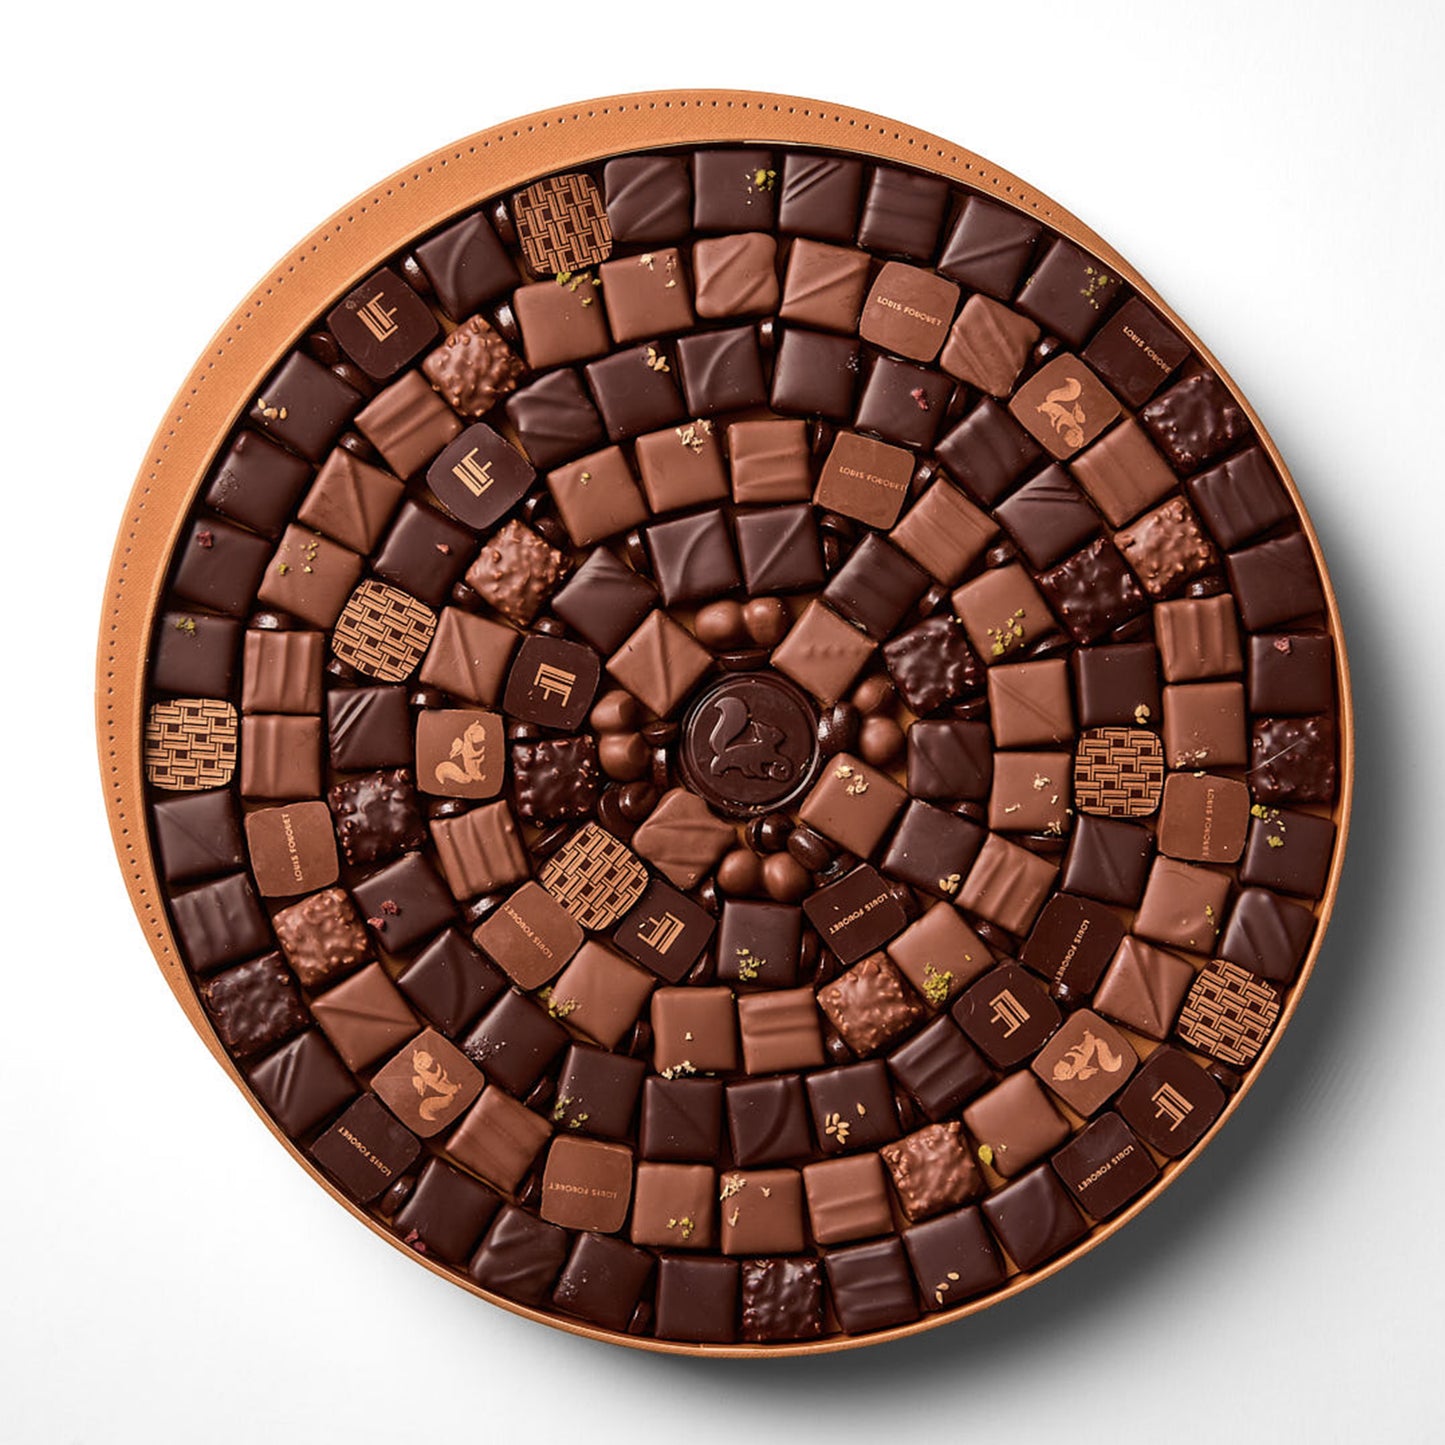 Boîte Impériale - 286 chocolats assortis